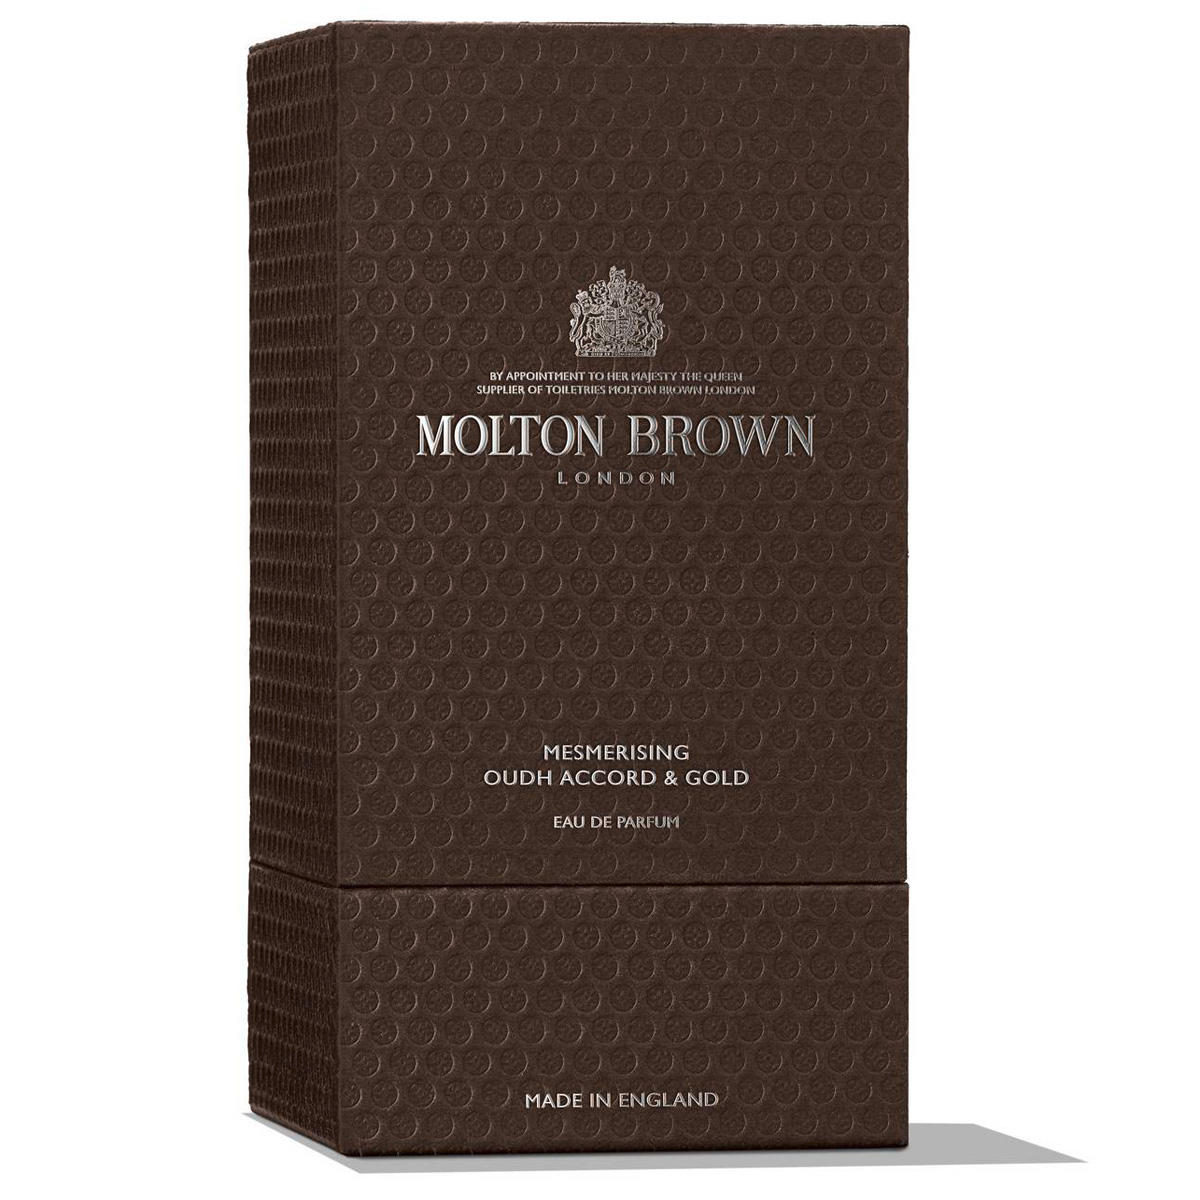 MOLTON BROWN Mesmerising Oudh Accord & Gold Eau de Parfum 100 ml - 7